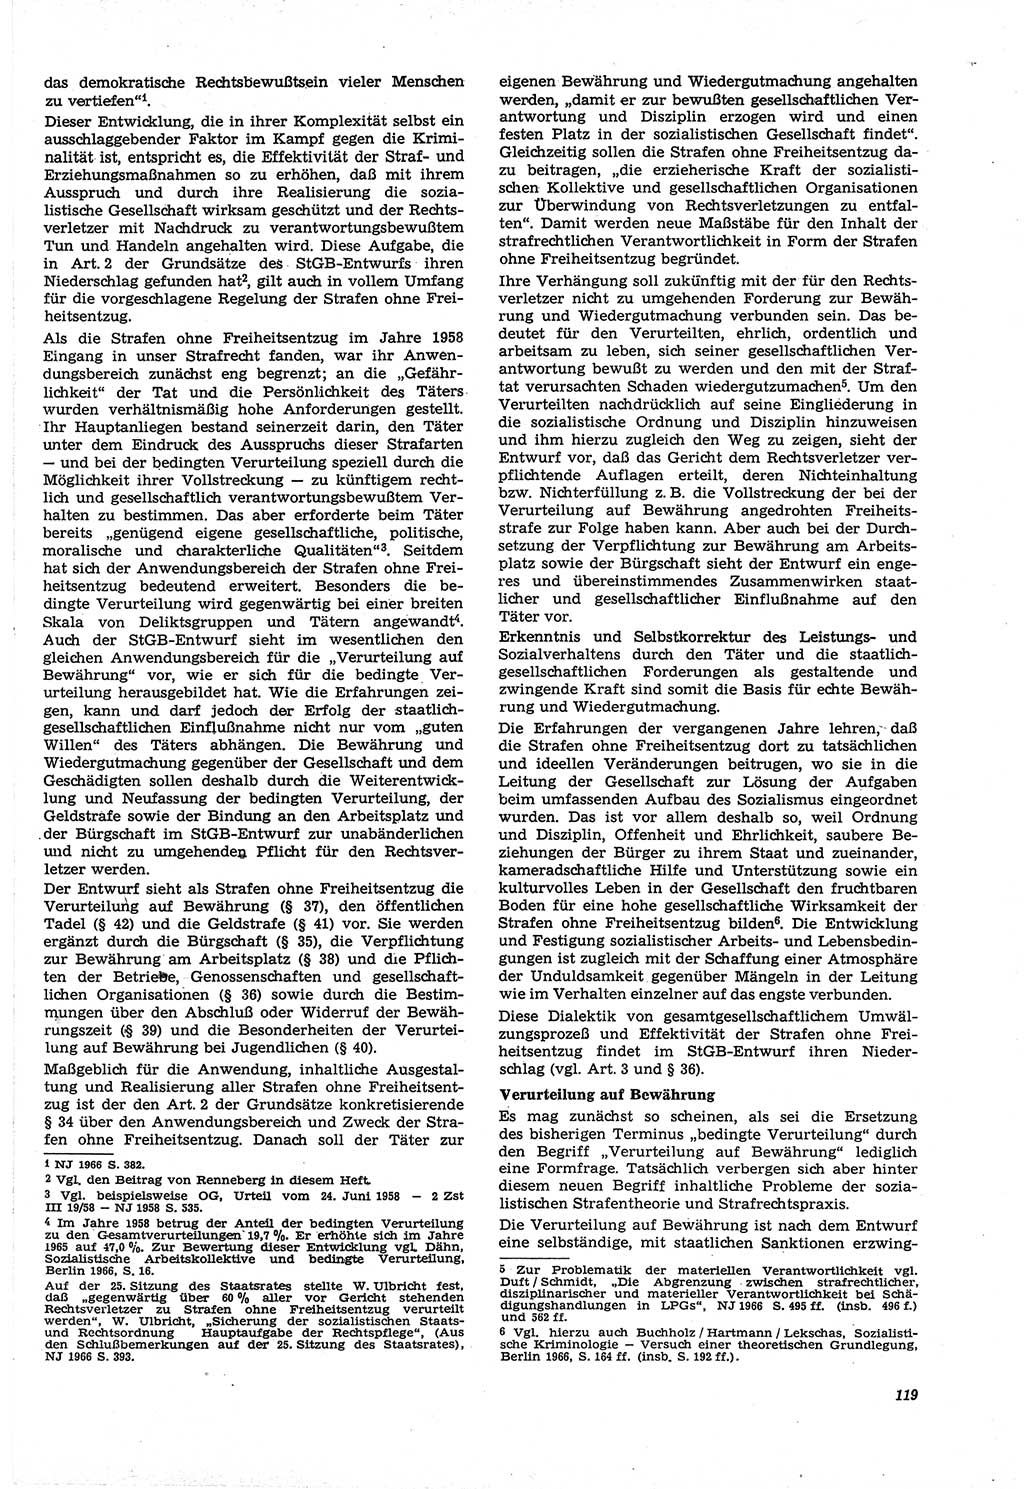 Neue Justiz (NJ), Zeitschrift für Recht und Rechtswissenschaft [Deutsche Demokratische Republik (DDR)], 21. Jahrgang 1967, Seite 119 (NJ DDR 1967, S. 119)